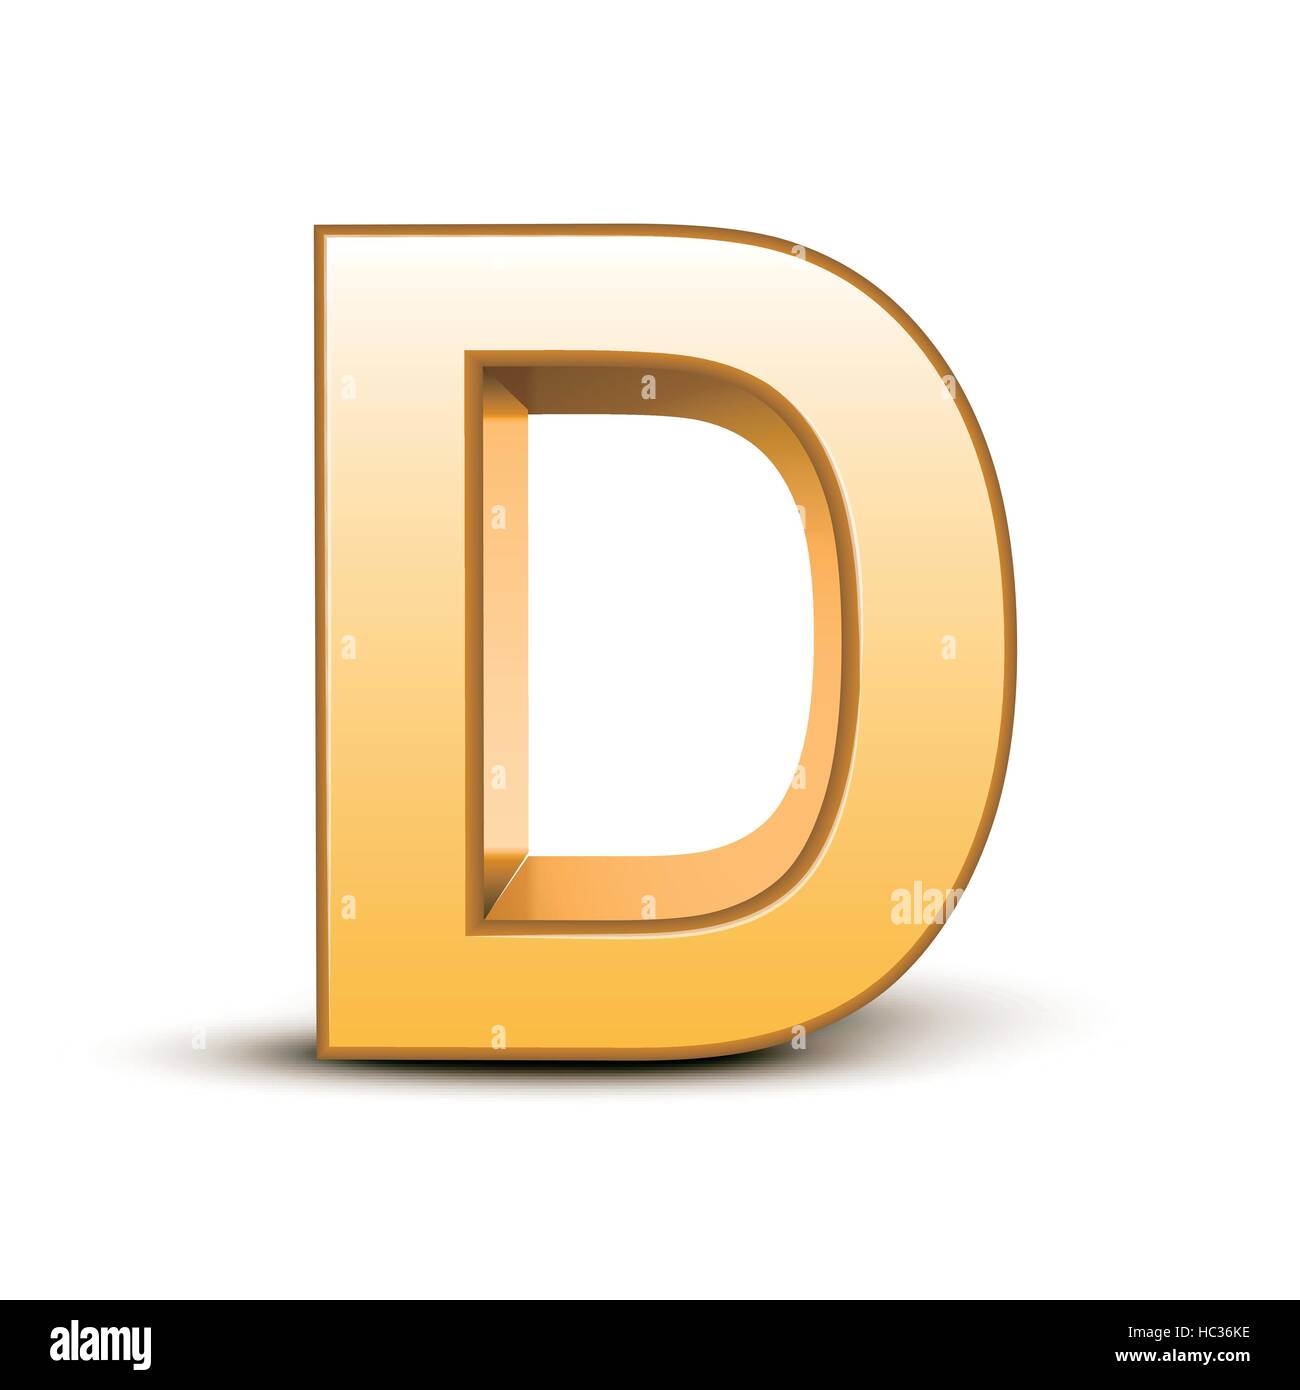 3d golden letter D isolated white background Stock Vector Image & Art ...